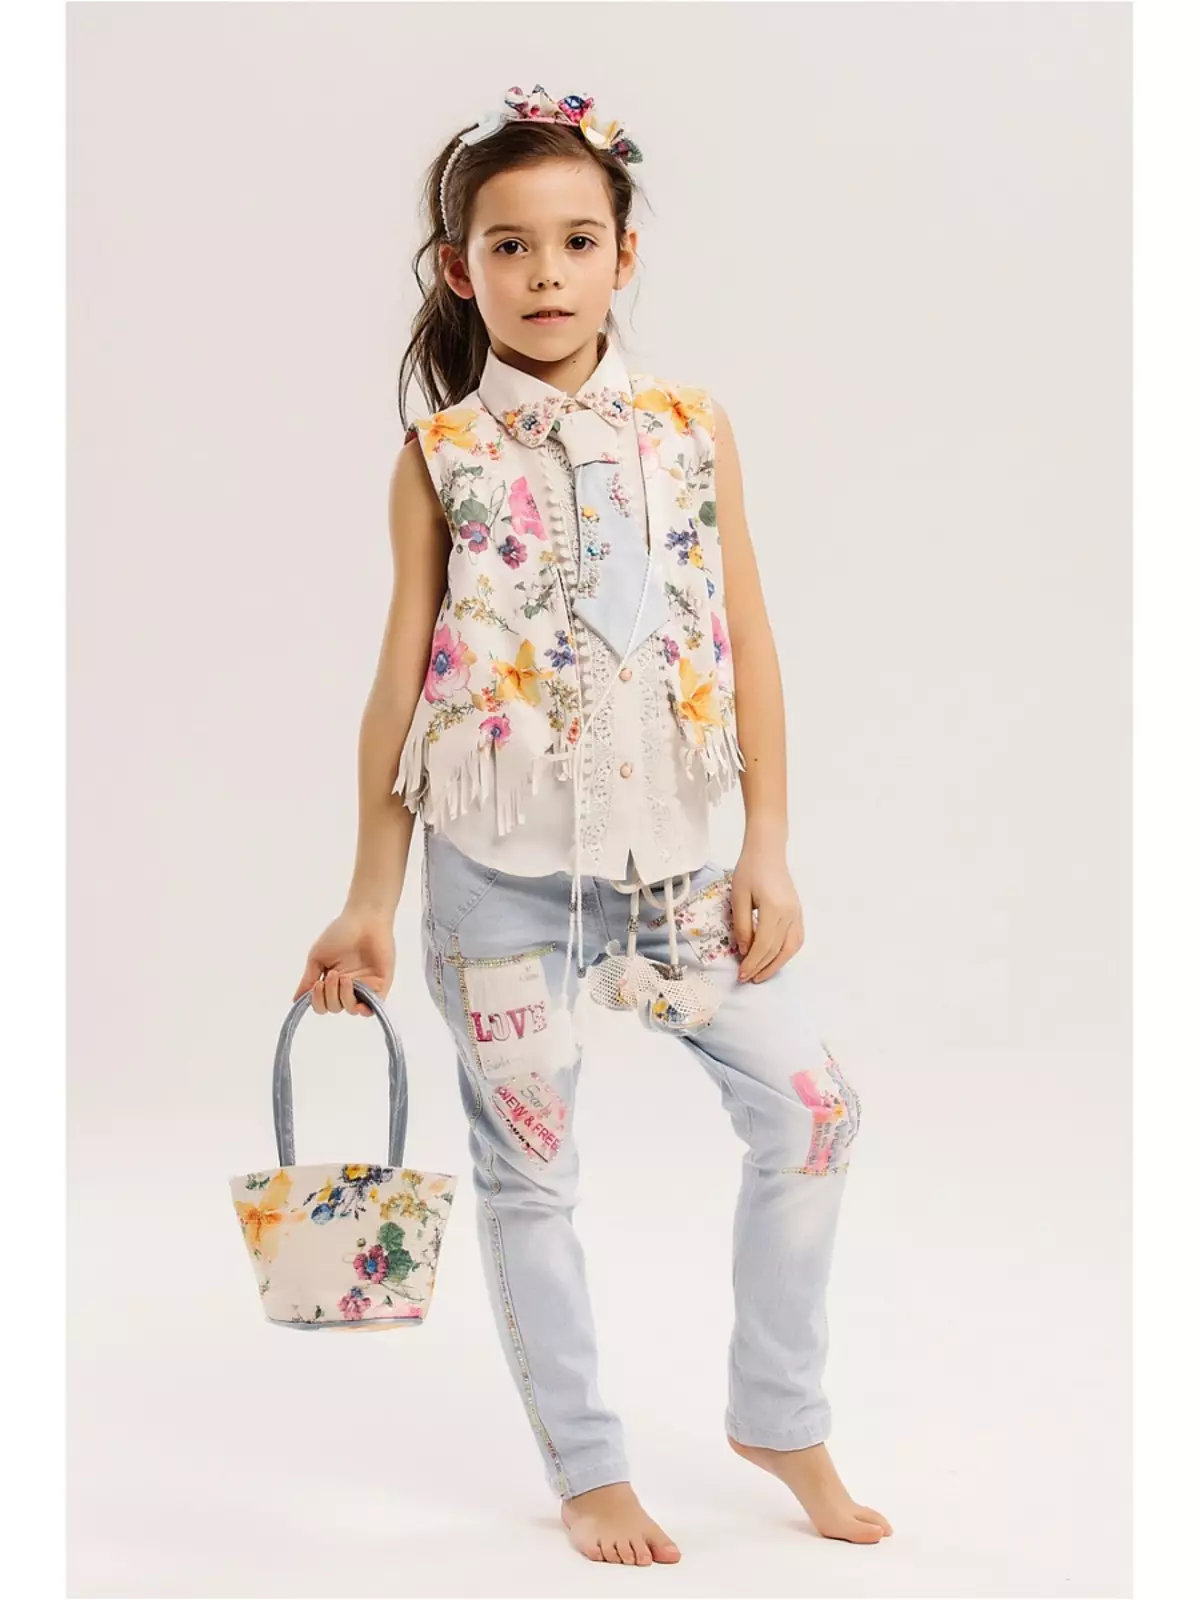 Kleid für Mädchen Baby Steen (50 Fotos): Modelle mit Cape, Mantel und Andere Kinderkleidung 3766_28